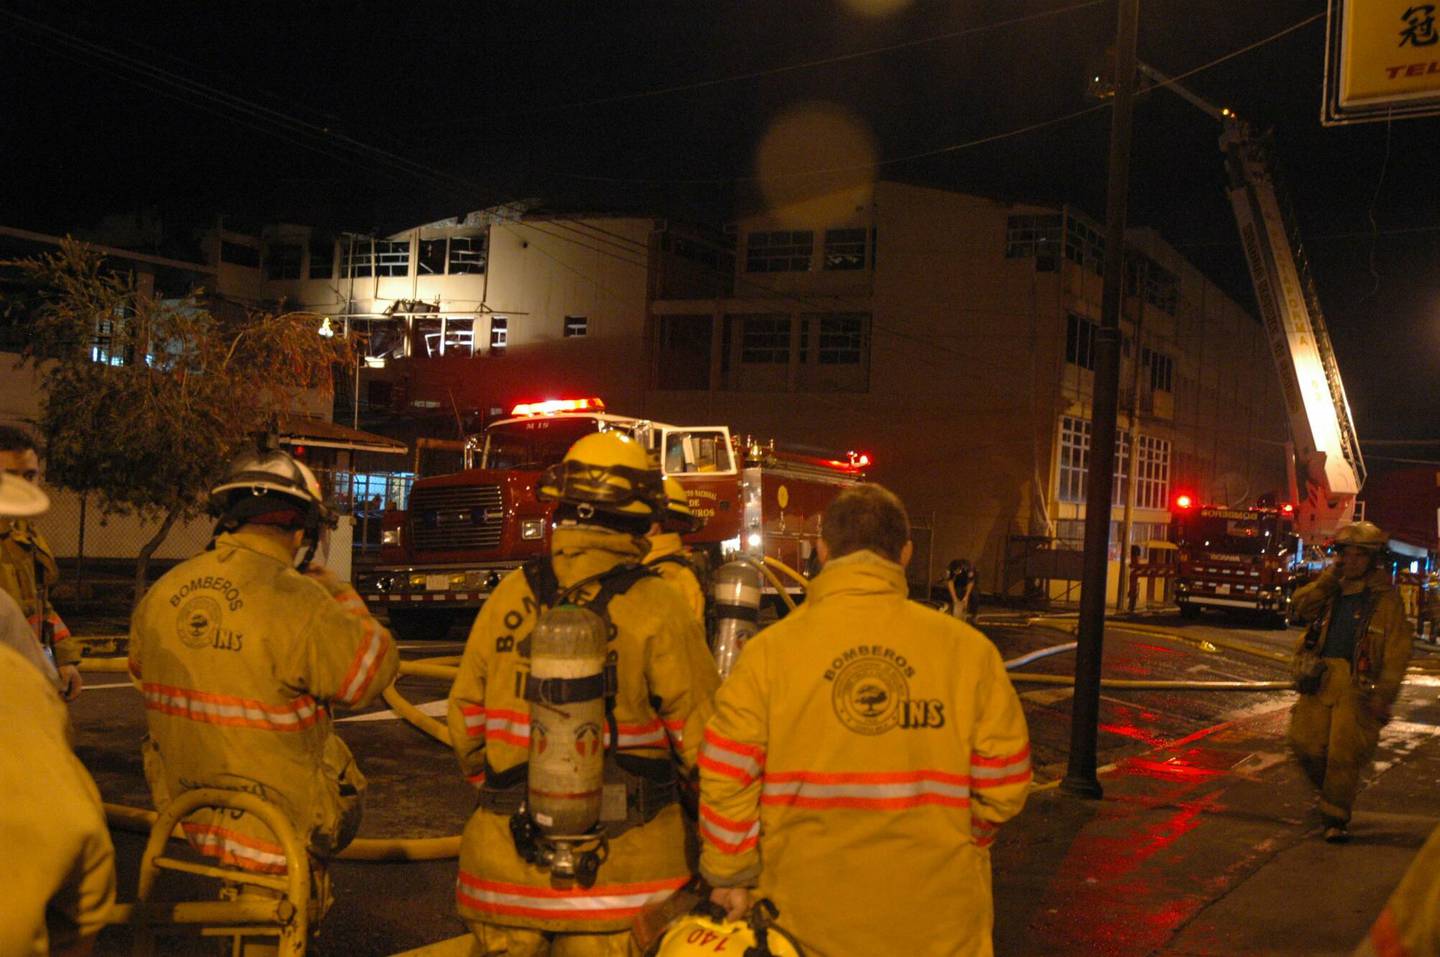 El 12 de julio del 2005, a las 2:23 de la madrugada, un incendio comenzó en la bodega de sueros del tercer piso del ala norte del Hospital Calderón Guardia, fallecieron 19 personas